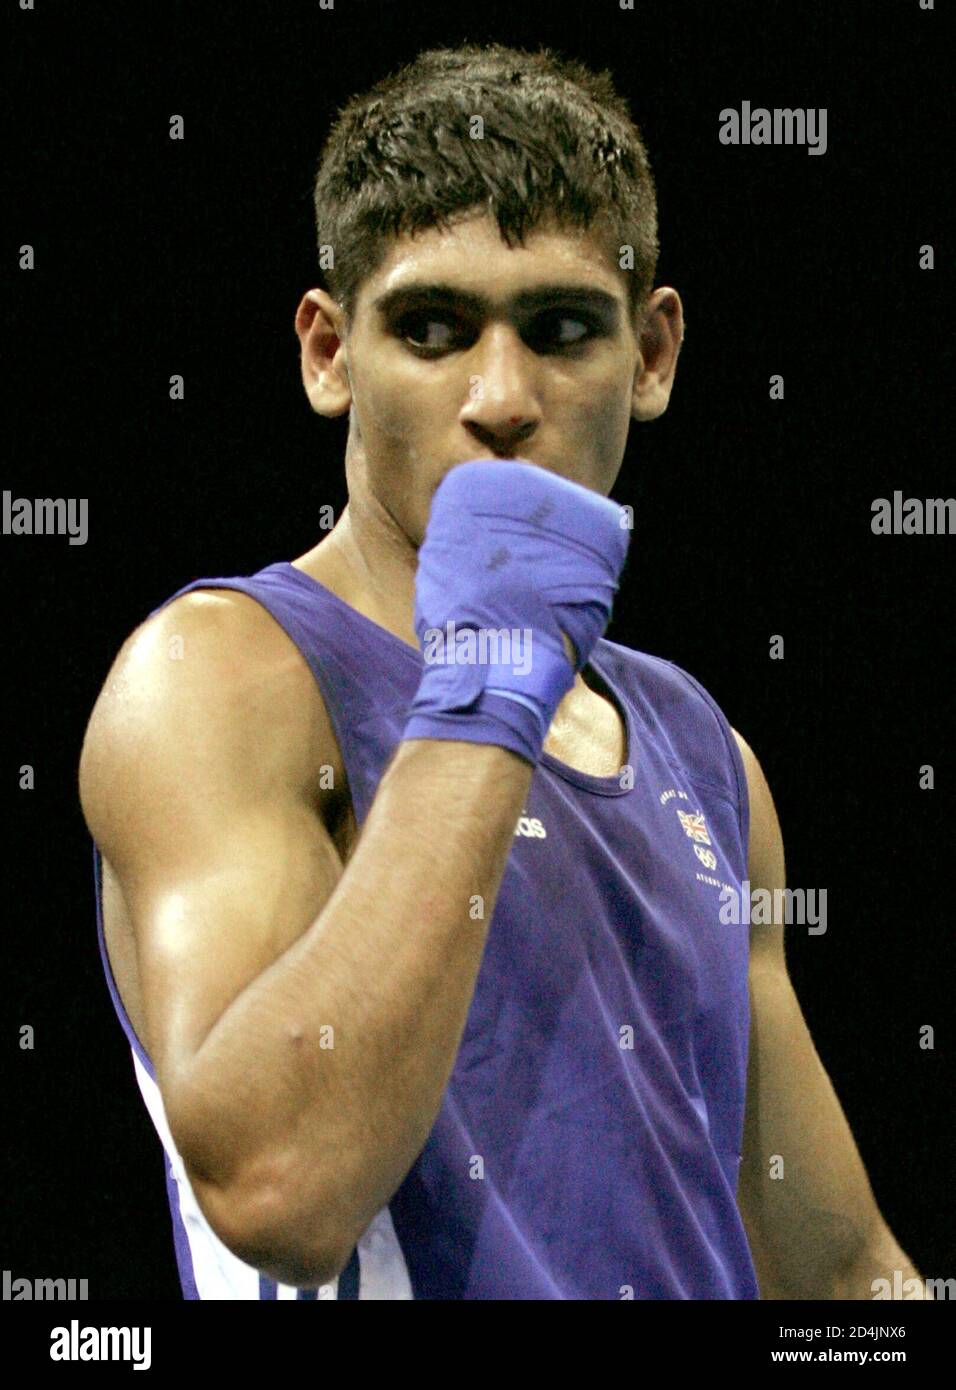 Amir Khan, de Grande-Bretagne, célèbre la victoire [sur Serik Yeleuov, du Kazakhstan] lors du match de boxe semi-finale masculin (60 kg) aux Jeux Olympiques d'été d'Athènes 2004, le 27 août 2004. Khan a gagné le match. Banque D'Images